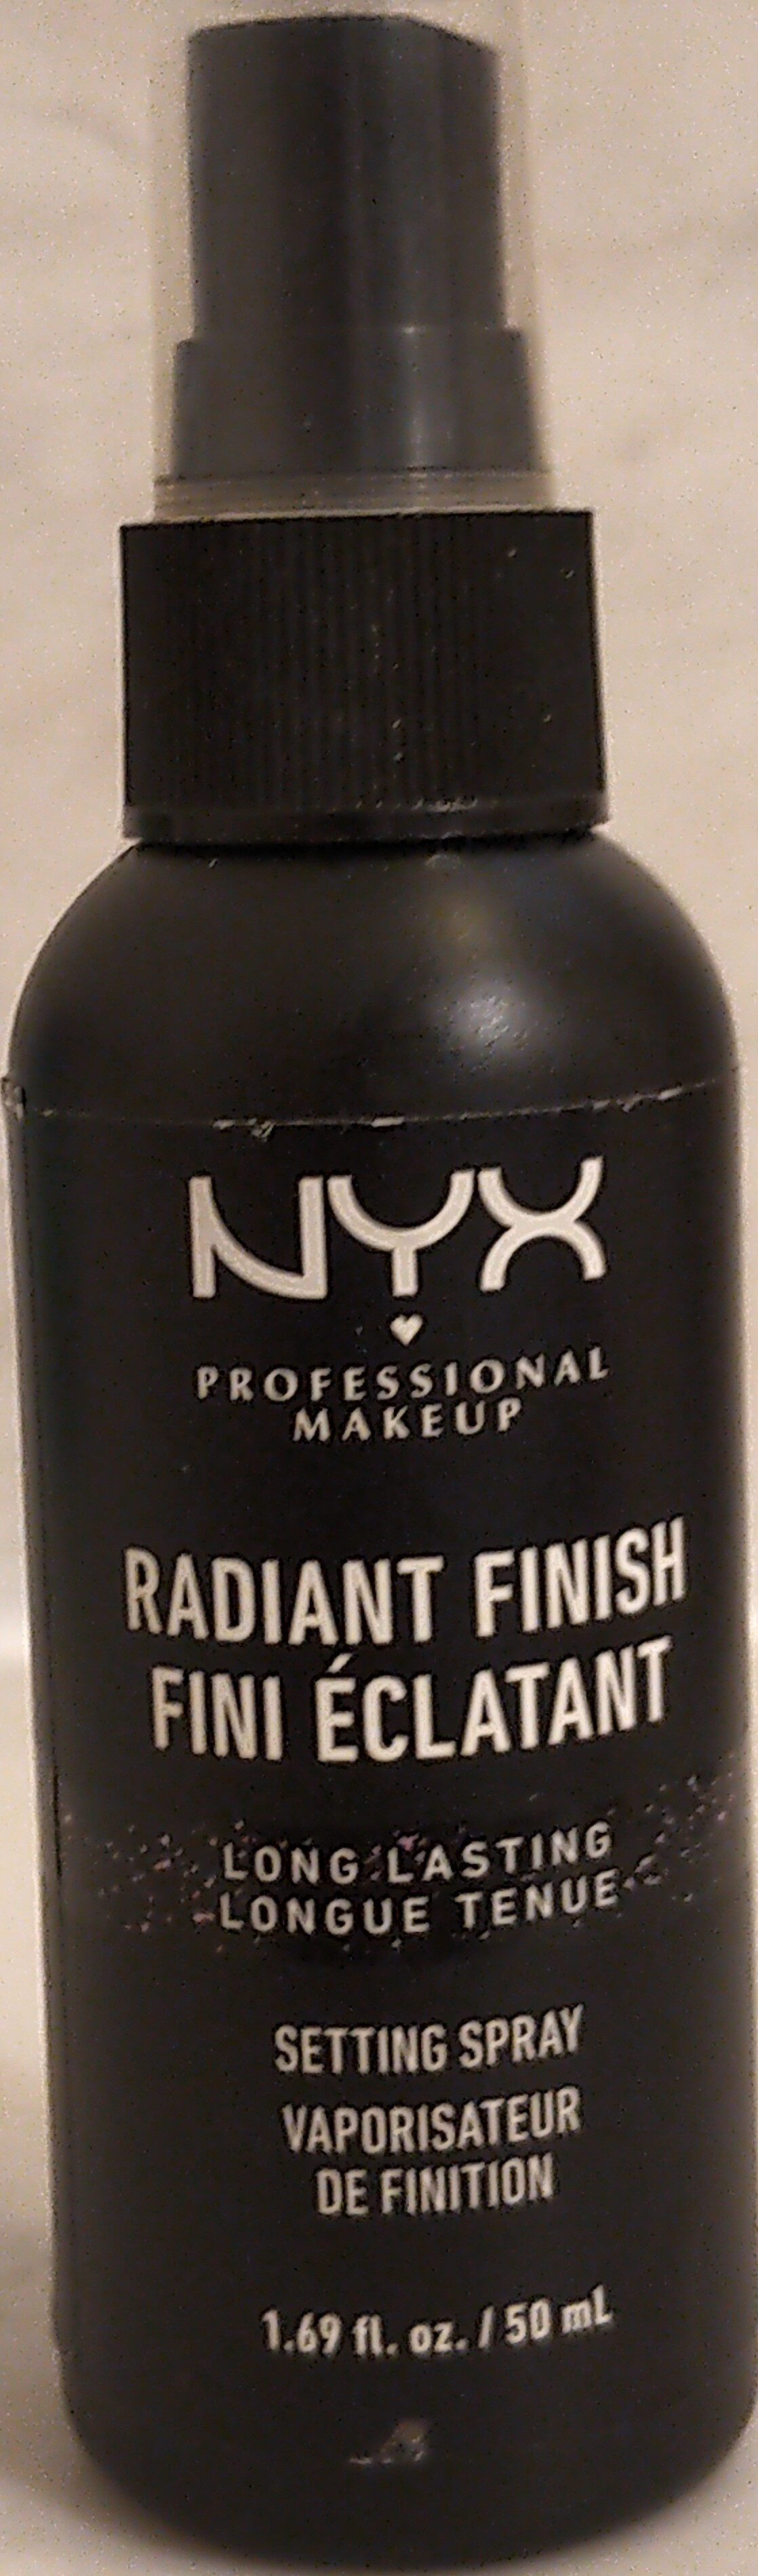 Radiant Finish Long Lasting Setting Spray - Produto - en